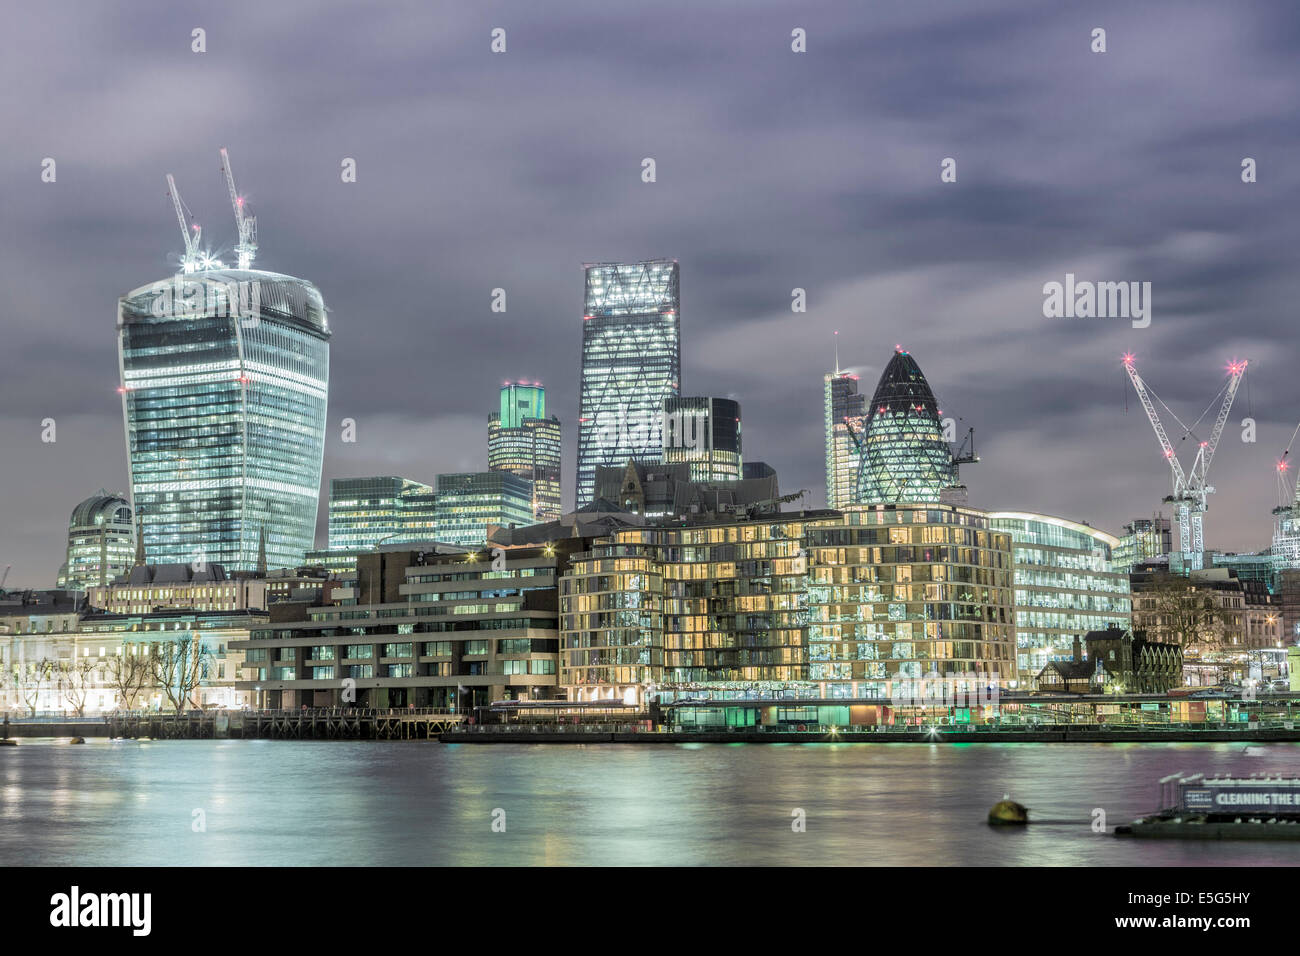 Ciudad de Londres, el distrito financiero y comercial de pepinillo Cheesegrater skyline mostrando, y edificios de Walkie Talkie, Londres, Reino Unido. Foto de stock